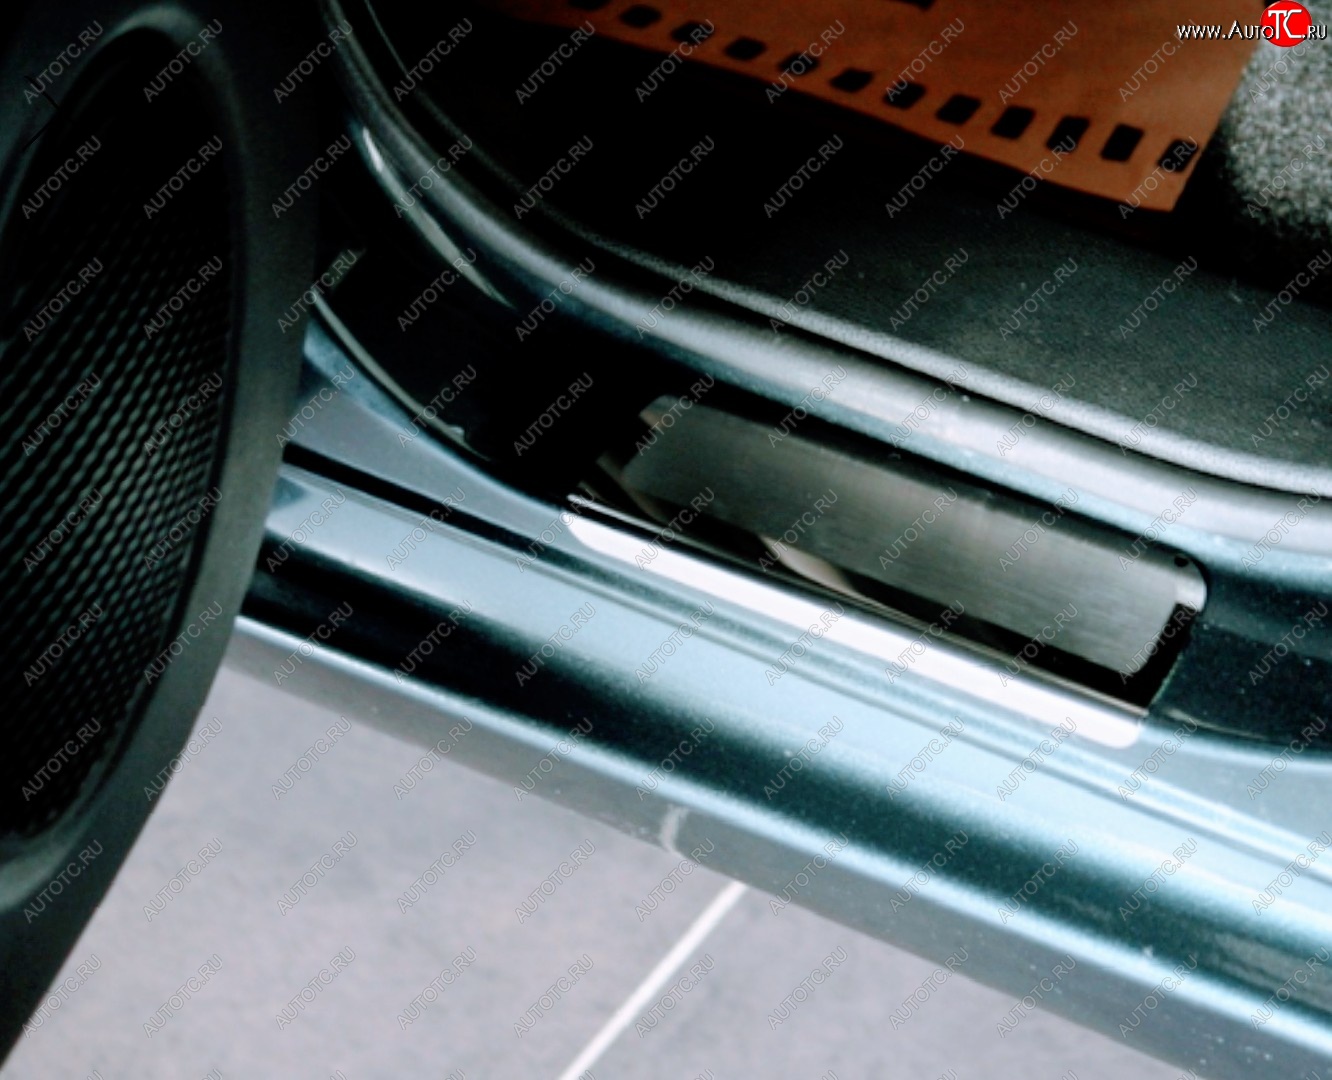 889 р. Пороги накладки Russtal  Mazda 2/Demio  DY (2002-2007) (Нержавейка полированная)